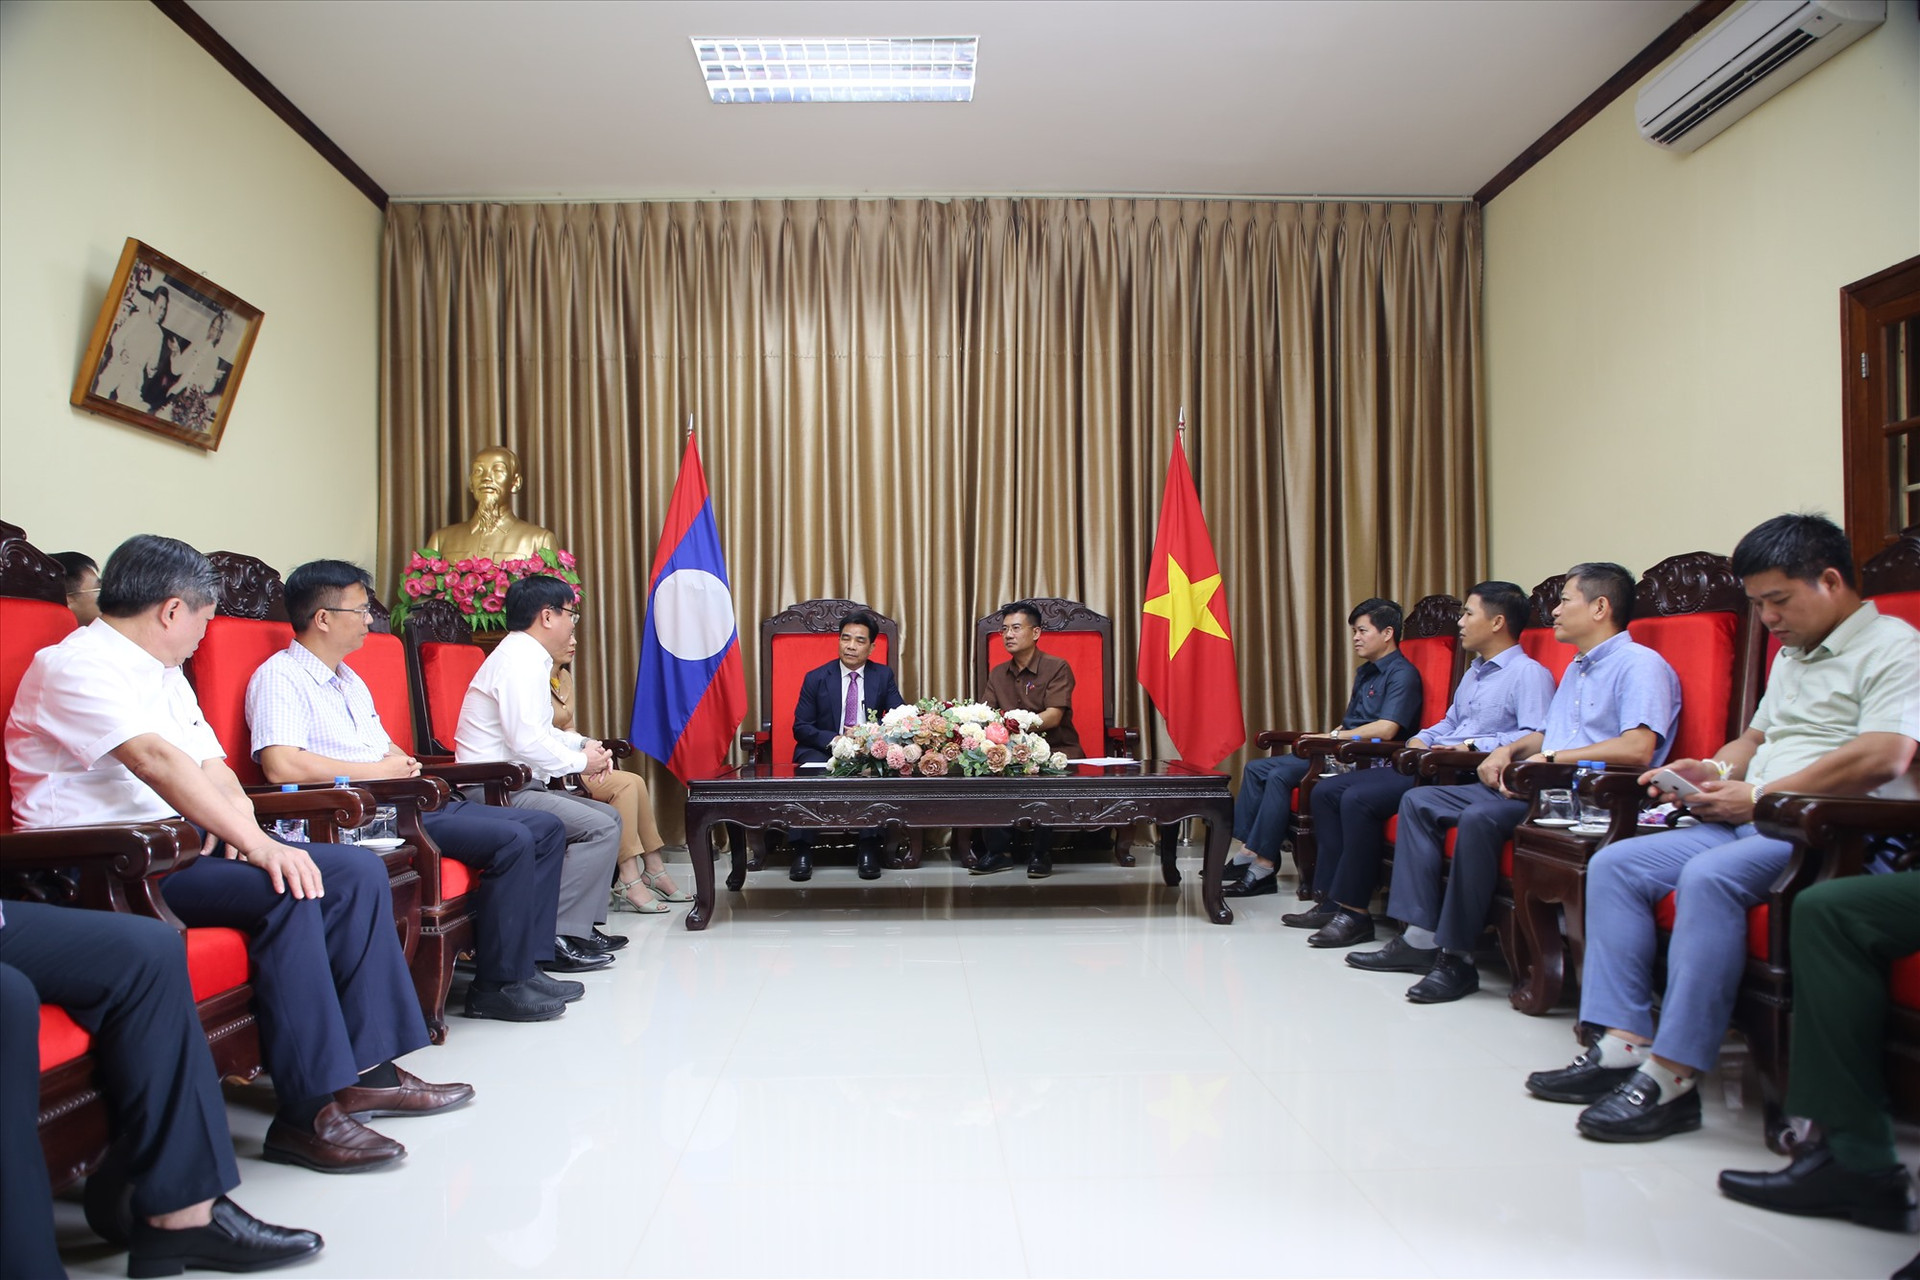 Đoàn đại biểu cấp cao tỉnh Quảng Nam thăm Tổng lãnh sự quán Việt Nam tại Păc Sế (tỉnh Chămpasak, Lào). Ảnh: A.N